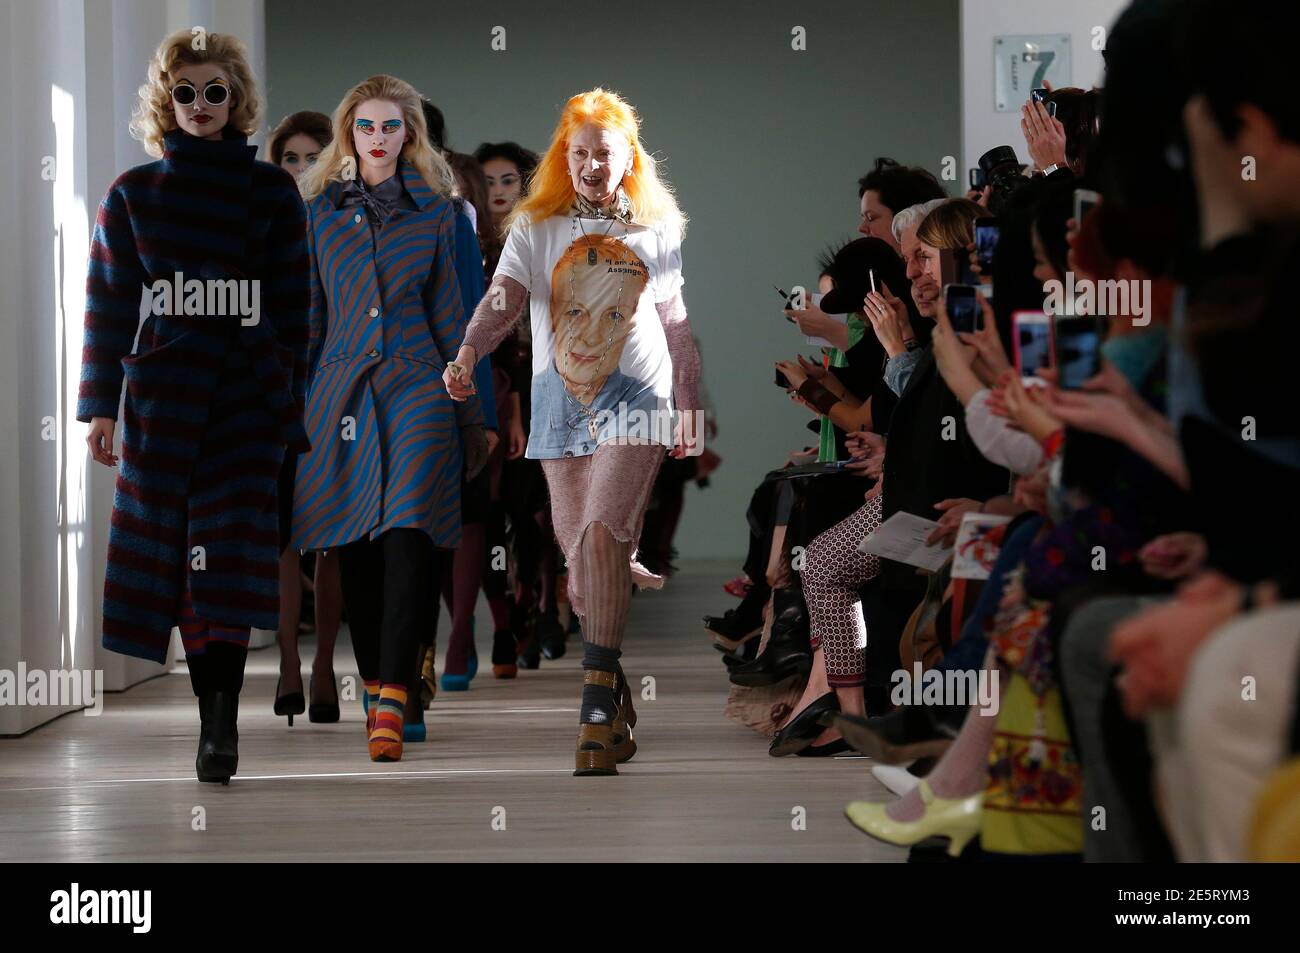 Vivienne Westwood rejoint ses modèles sur la passerelle après la présentation de la collection Vivienne Westwood Red Label automne/hiver 2013 lors de la London Fashion week, le 17 février 2013. REUTERS/Suzanne Plunkett (GRANDE-BRETAGNE - Tags: MODE) Banque D'Images